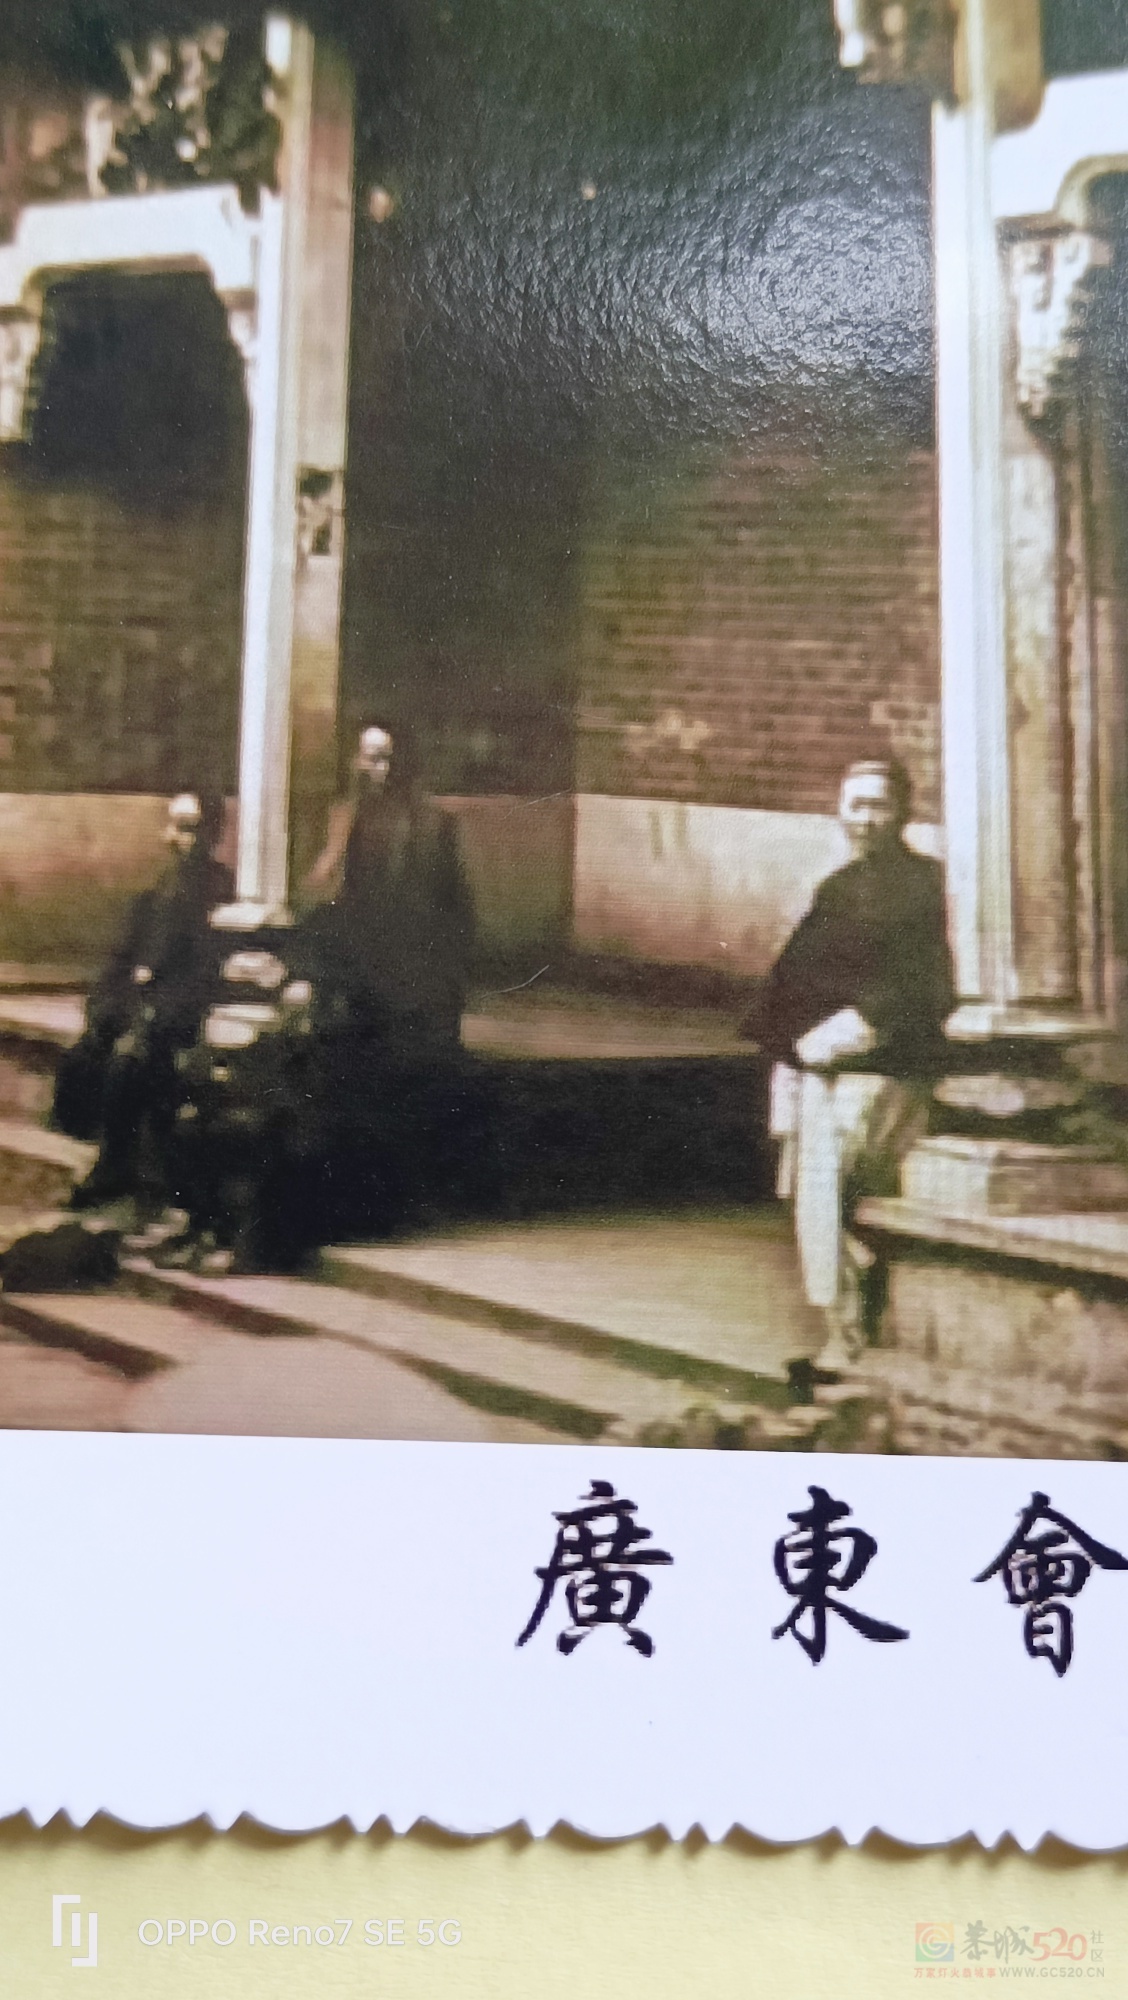 恭城广东会馆两幅最早期的照片240 / 作者:风凌天下 / 帖子ID:314816